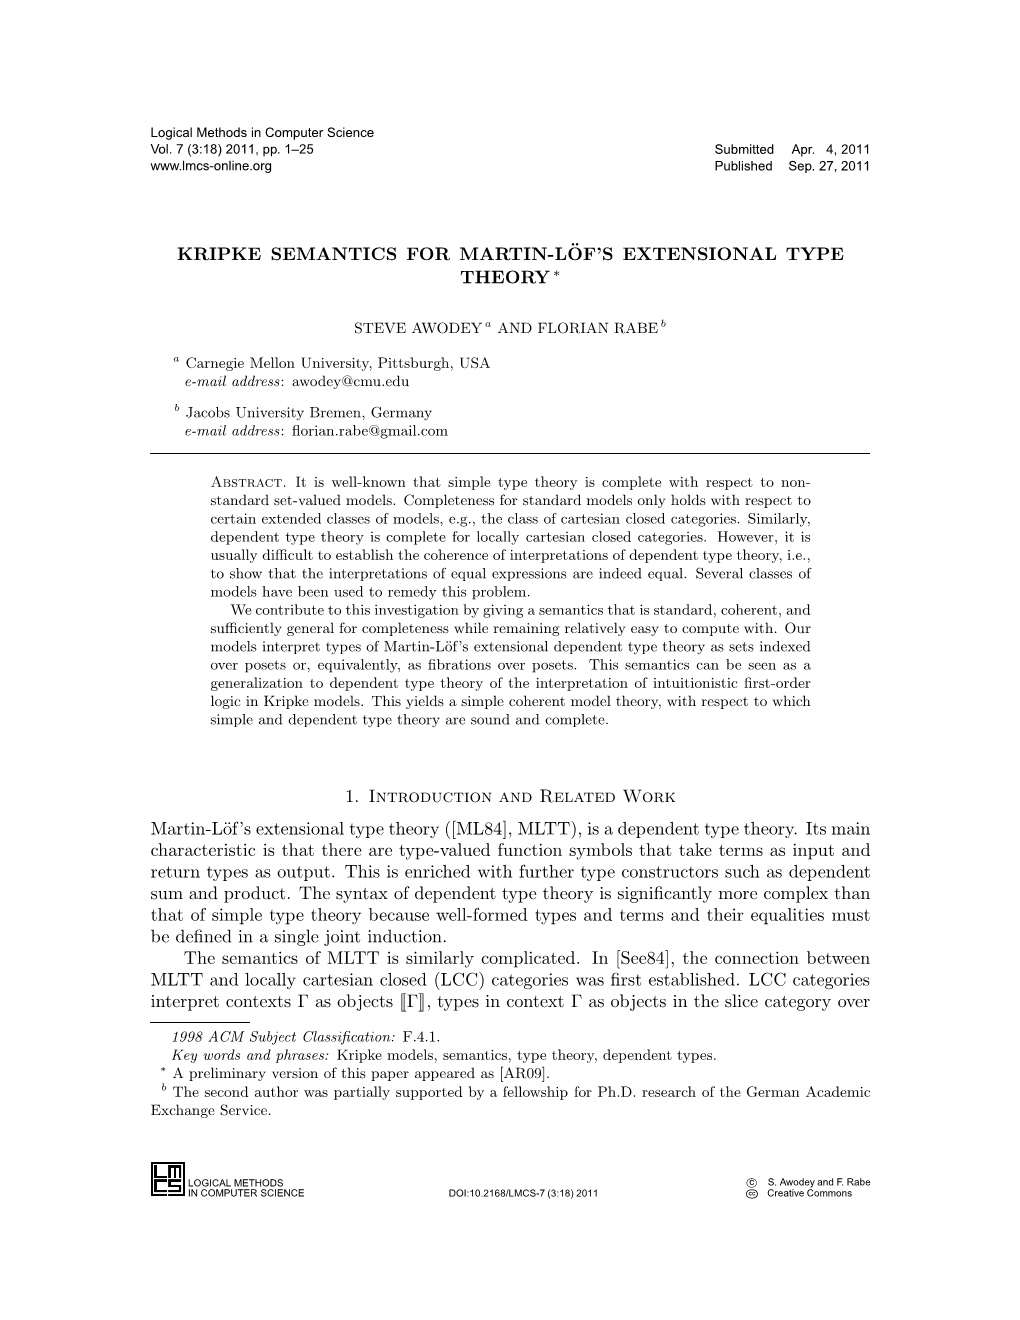 Kripke Semantics for Martin-L¨Of's Extensional Type